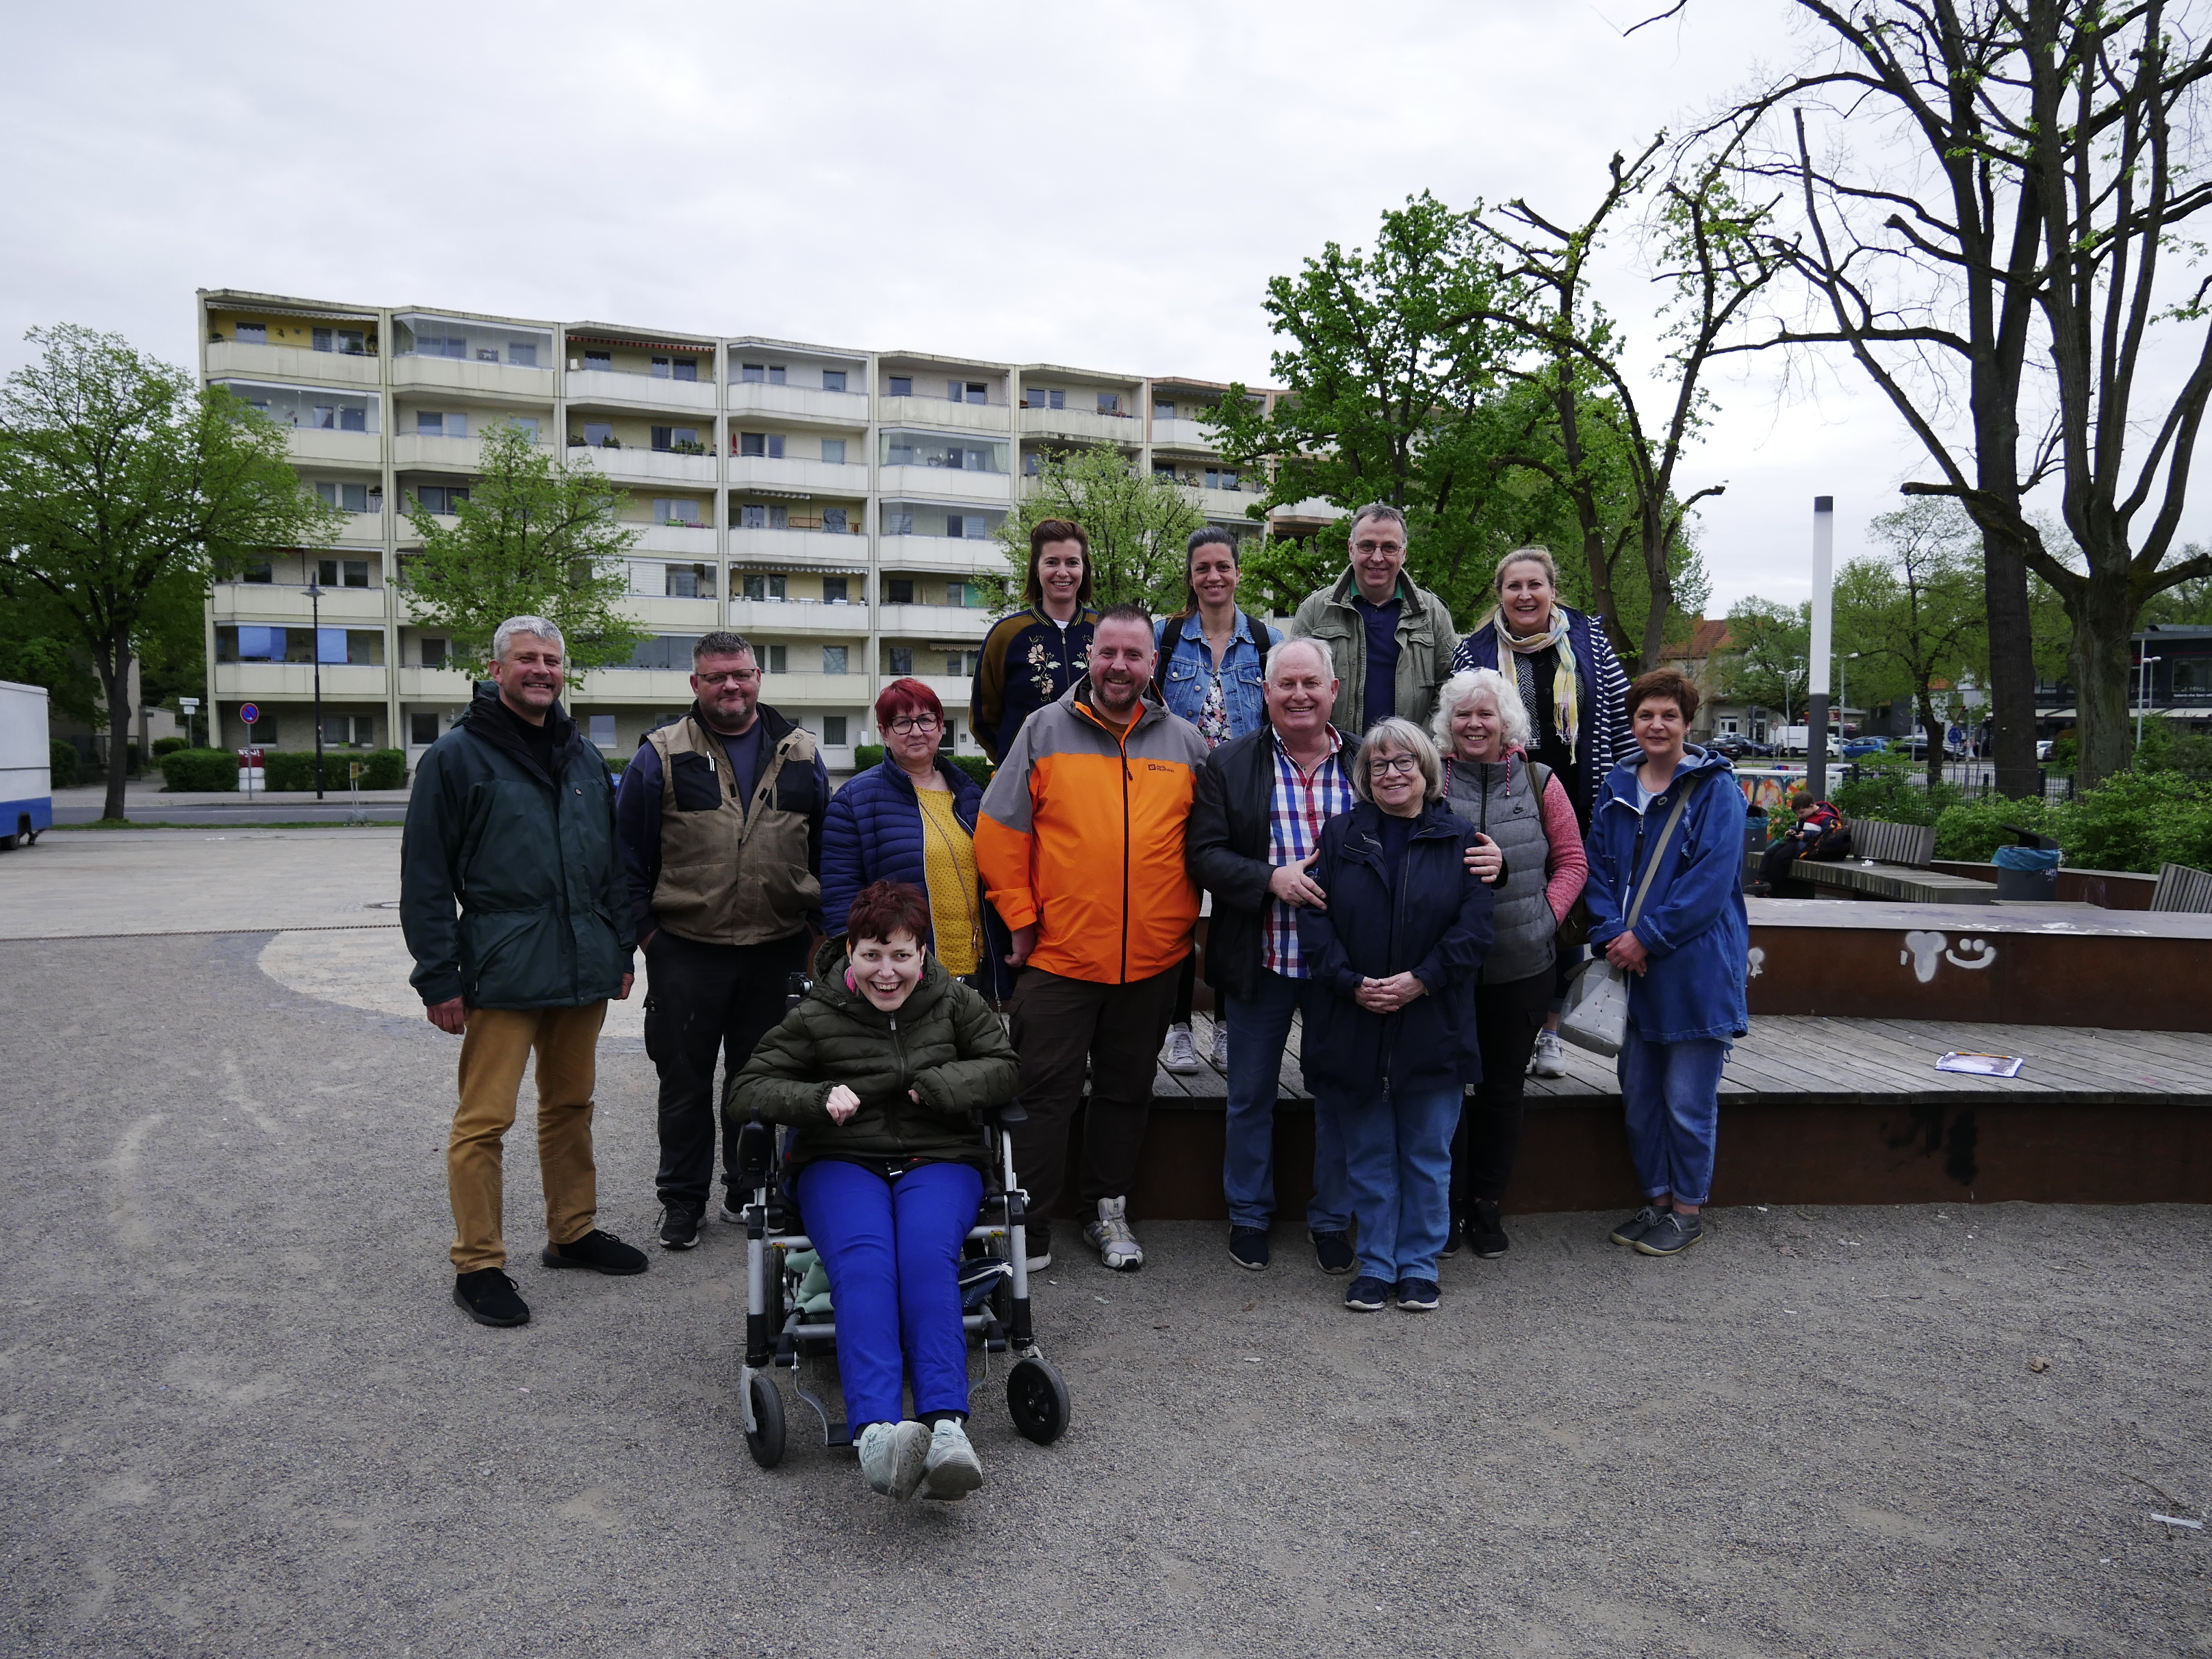 Die letzte Besprechung des Organisationsteams, welches die Veranstaltung in Erkner vorbereitet, endete mit einem Gruppenfoto auf dem Kirchvorplatz.